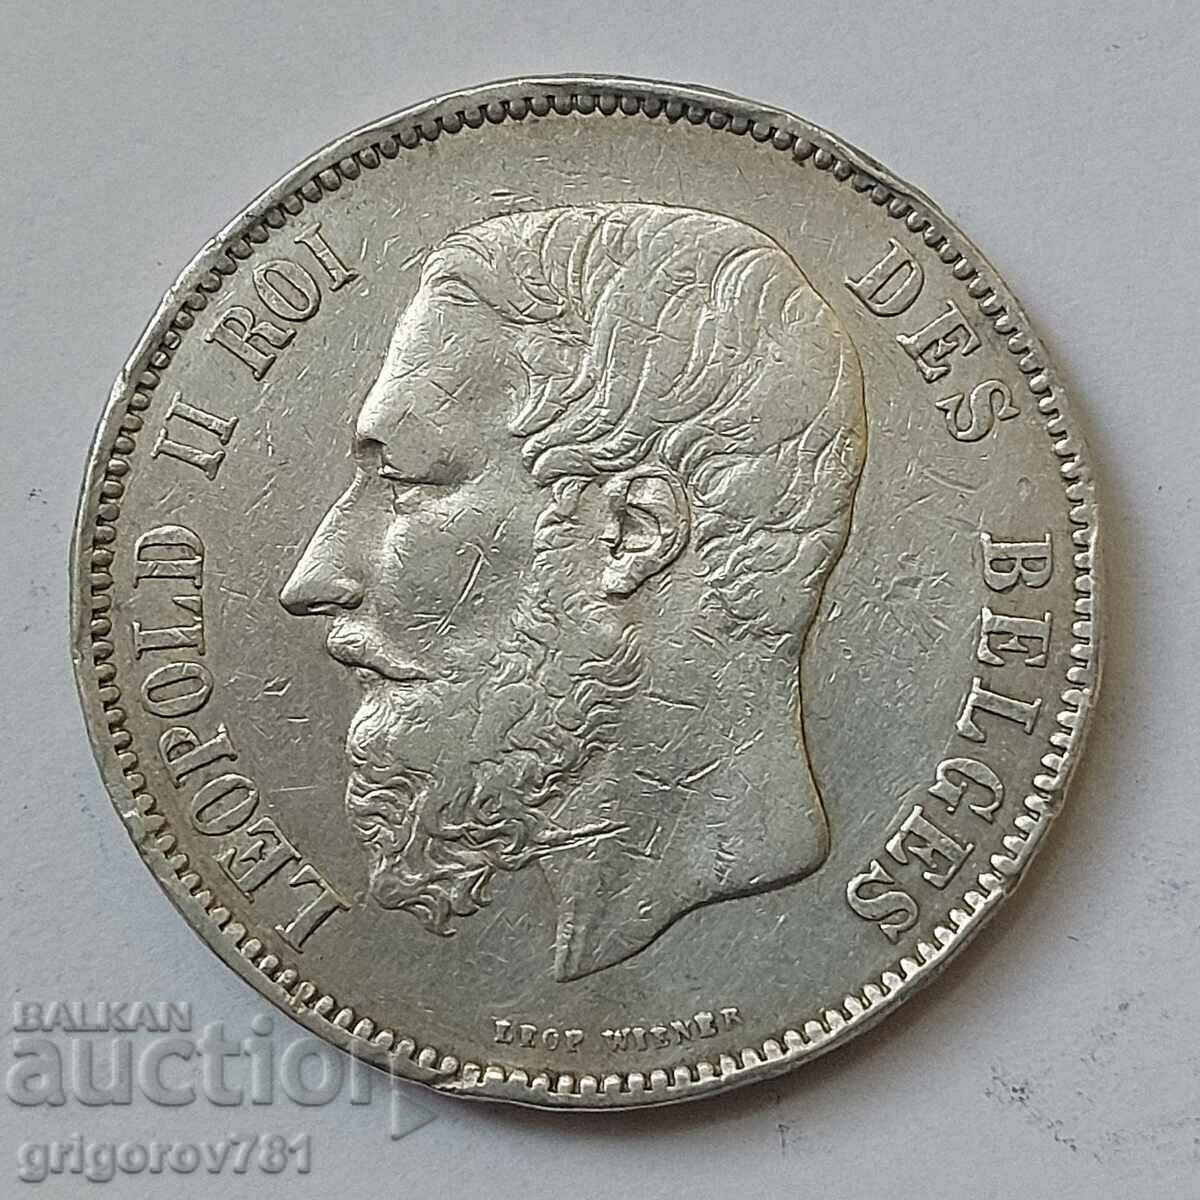 5 Francs Silver Belgium 1876 Silver Coin #186